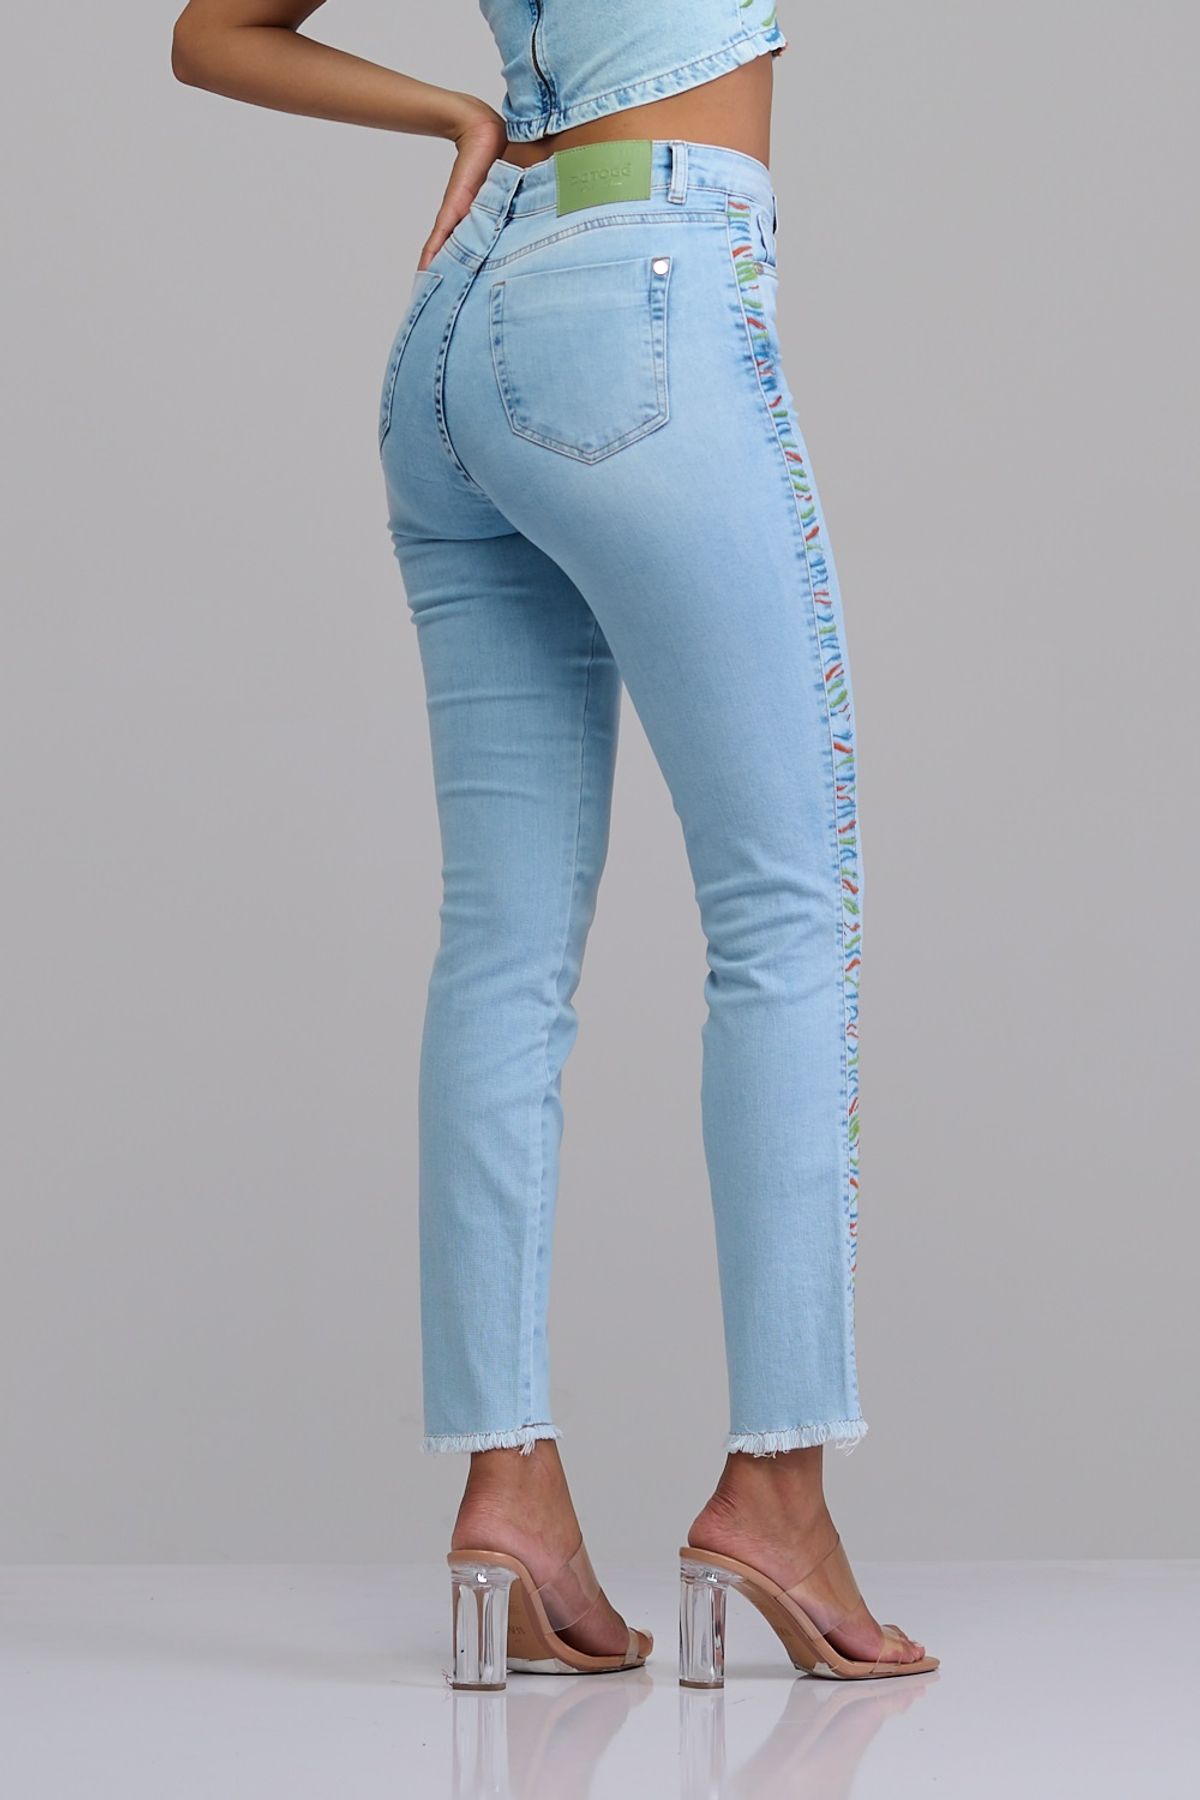 Calça Patogê feminina boot cut jeans cintura alta (G4) CL37033 - patoge